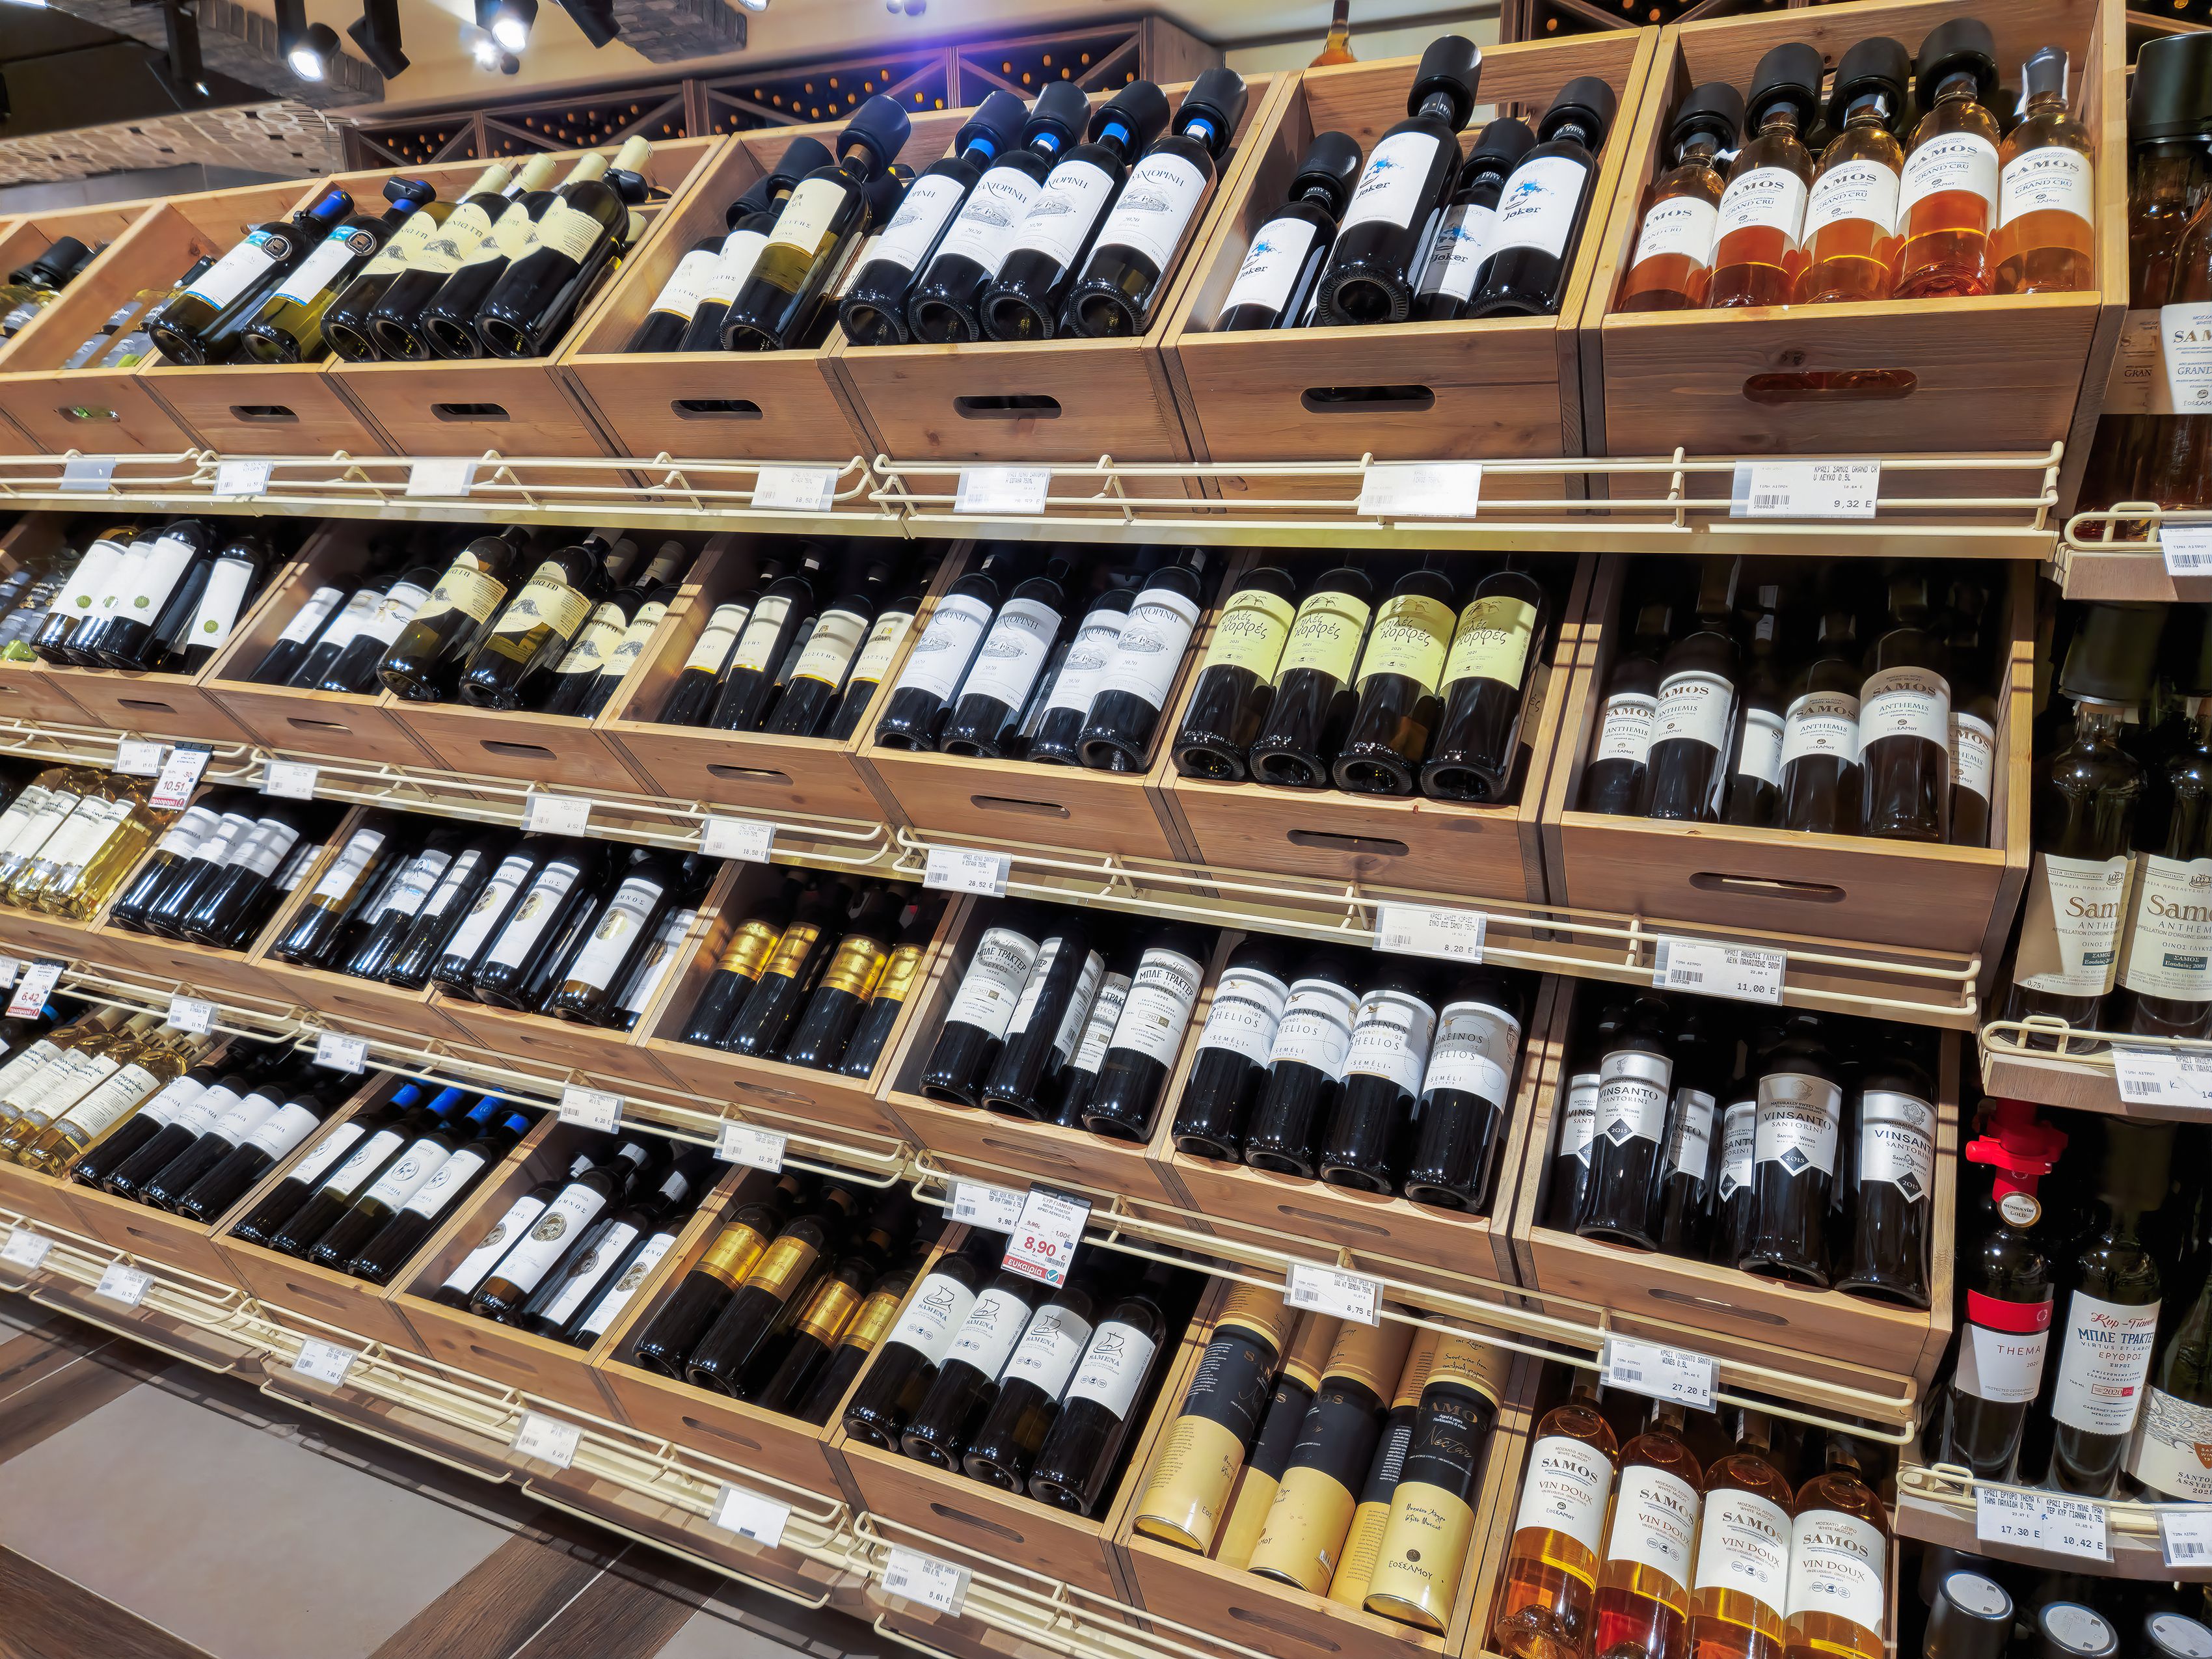 El truco del ‘código postal’ en el supermercado para encontrar vinos buenos baratos